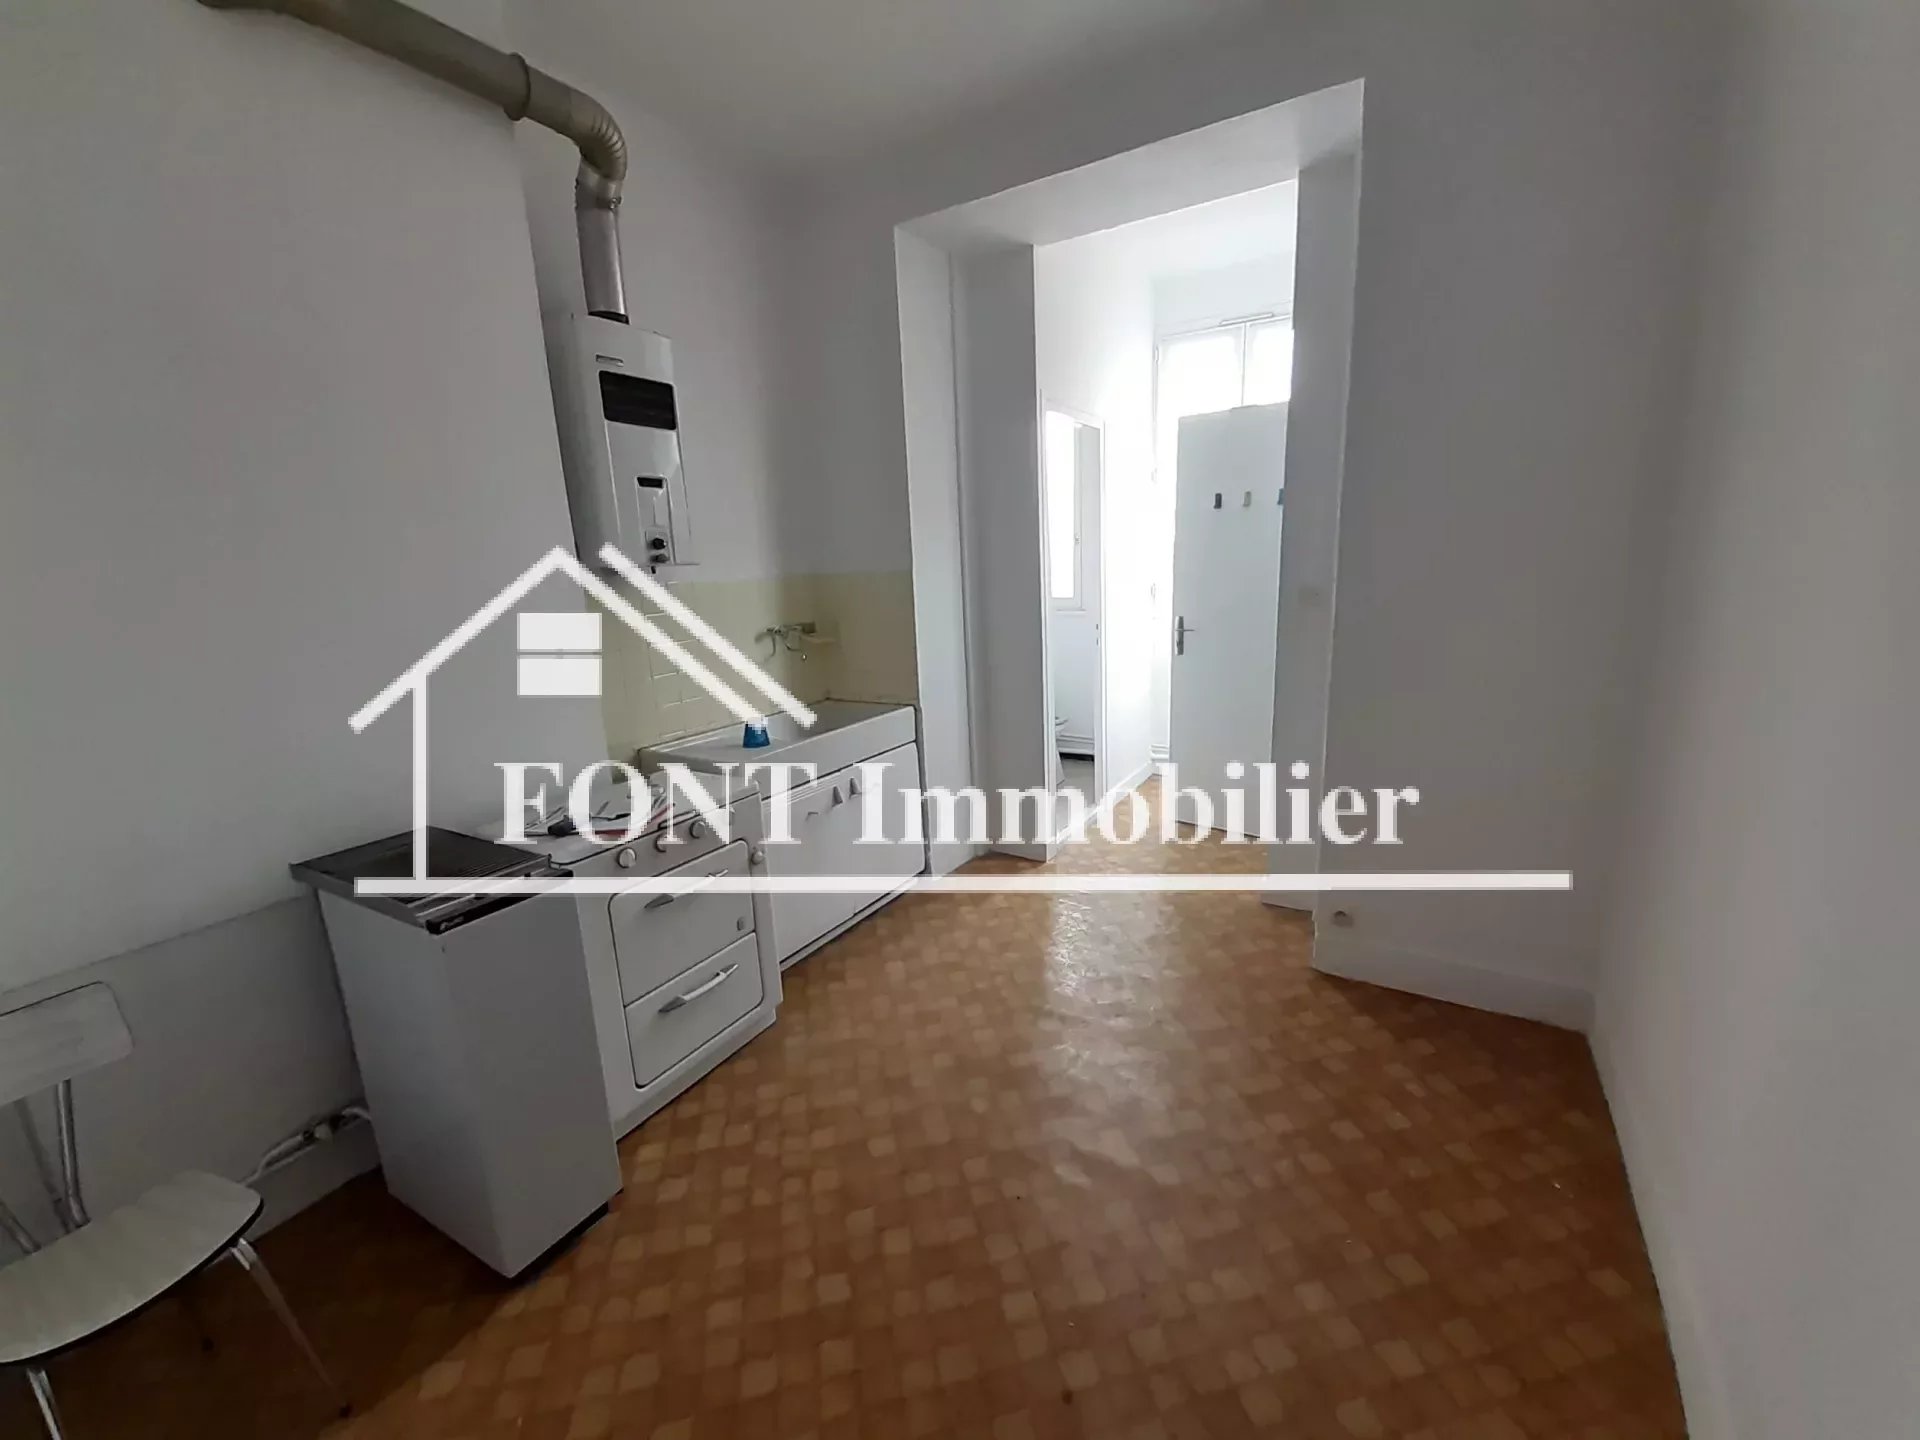 Vente Appartement 95m² à Saint-Étienne (42000) - Font Immobilier